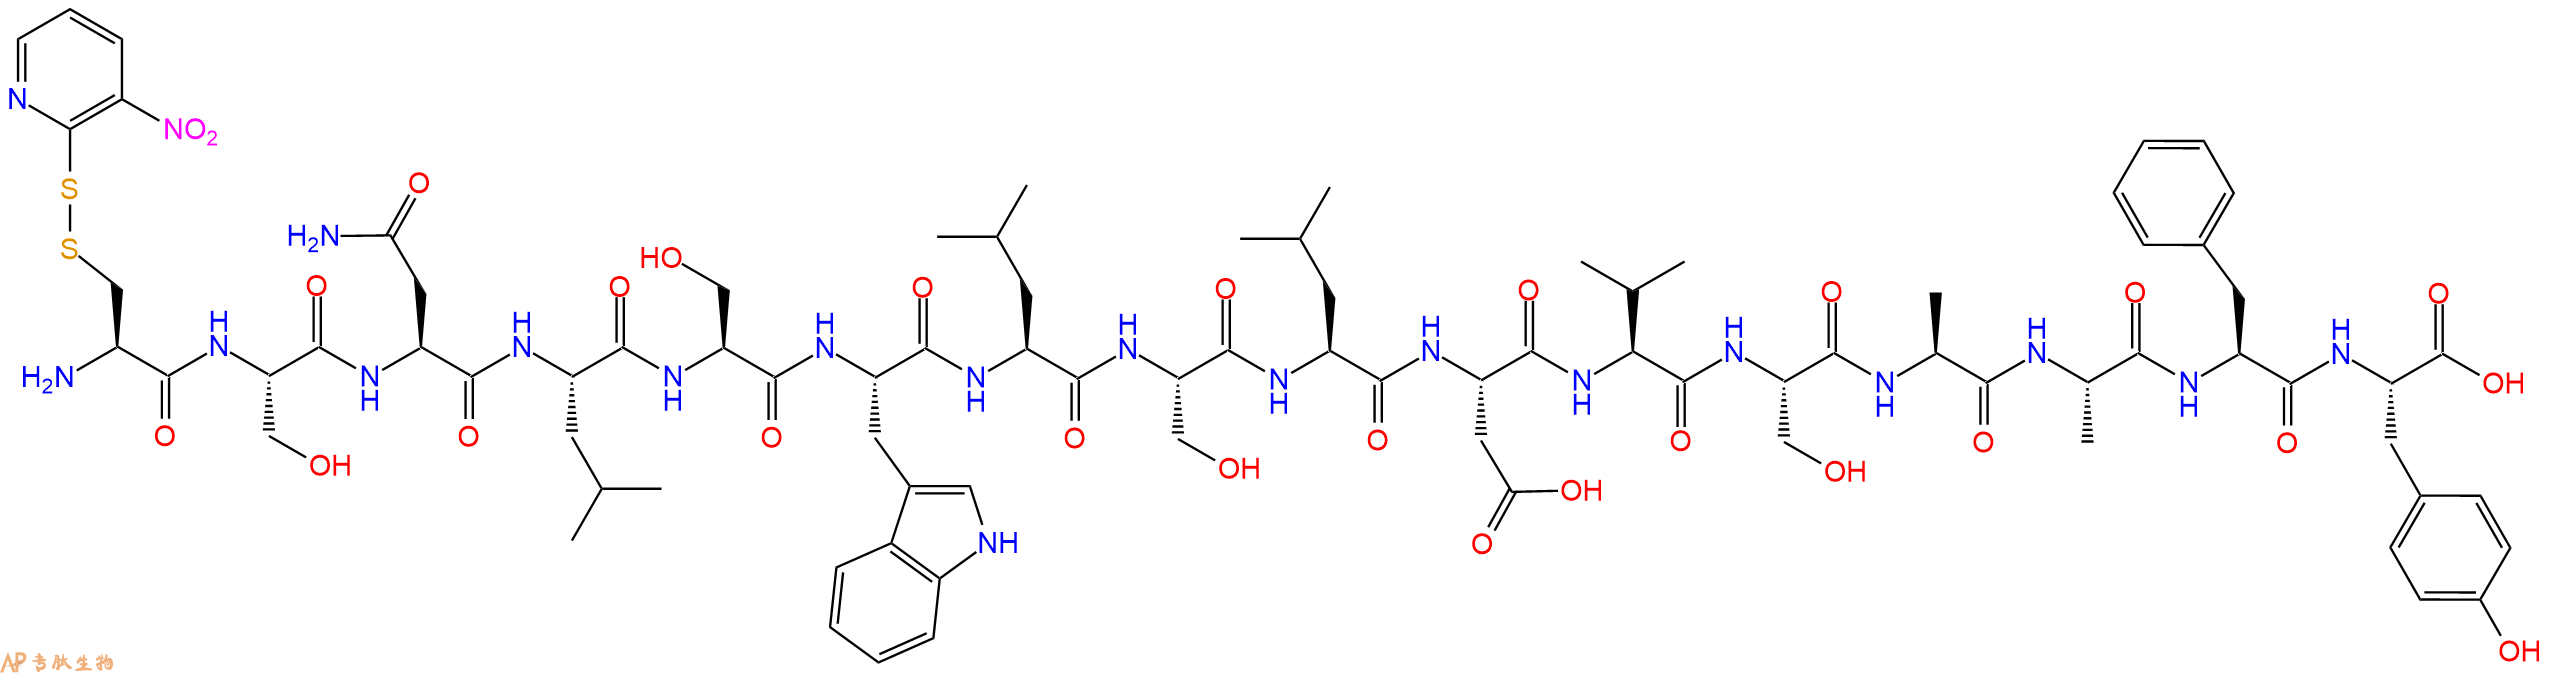 专肽生物产品H2N-Cys(Npys)-Ser-Asn-Leu-Ser-Trp-Leu-Ser-Leu-Asp-